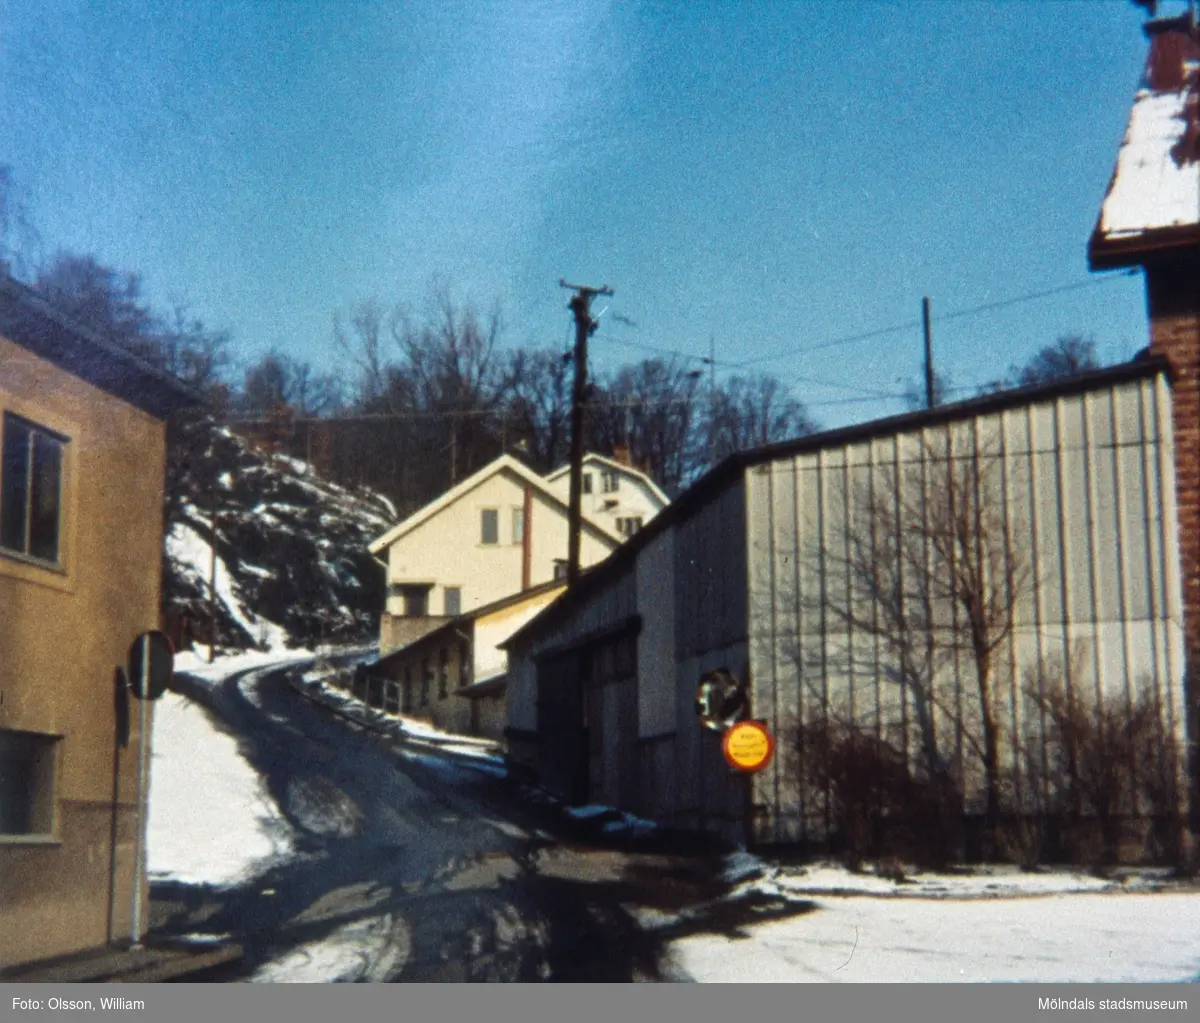 Samuel Norbergsgatan – Friareliden, okänt årtal. En backe svänger åt höger utefter Störtfjället. Fabriksbyggnad ses till vänster och garage samt villor till höger. Elledningar passerar över byggnaderna och det är snö och halka på marken.